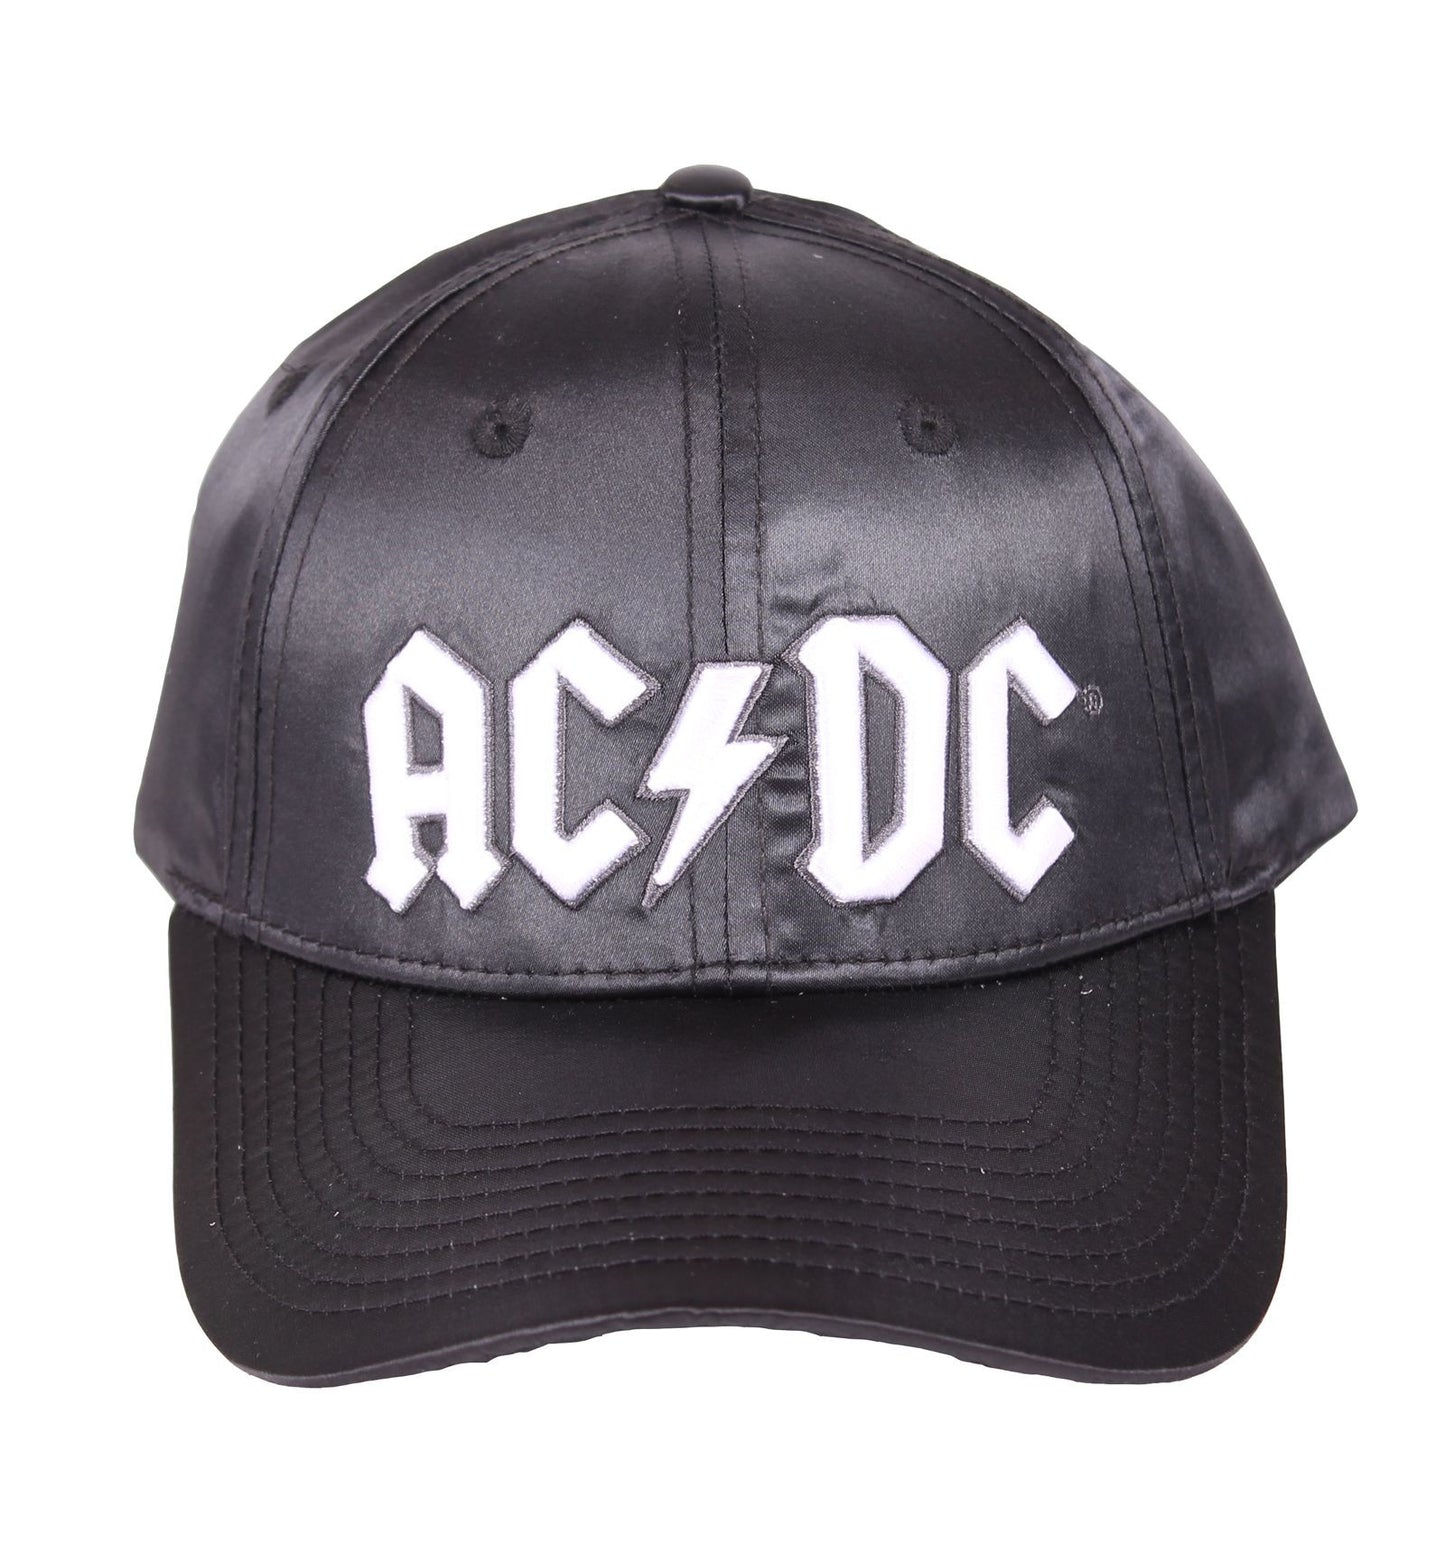 AC/DC Cap - Back In Black